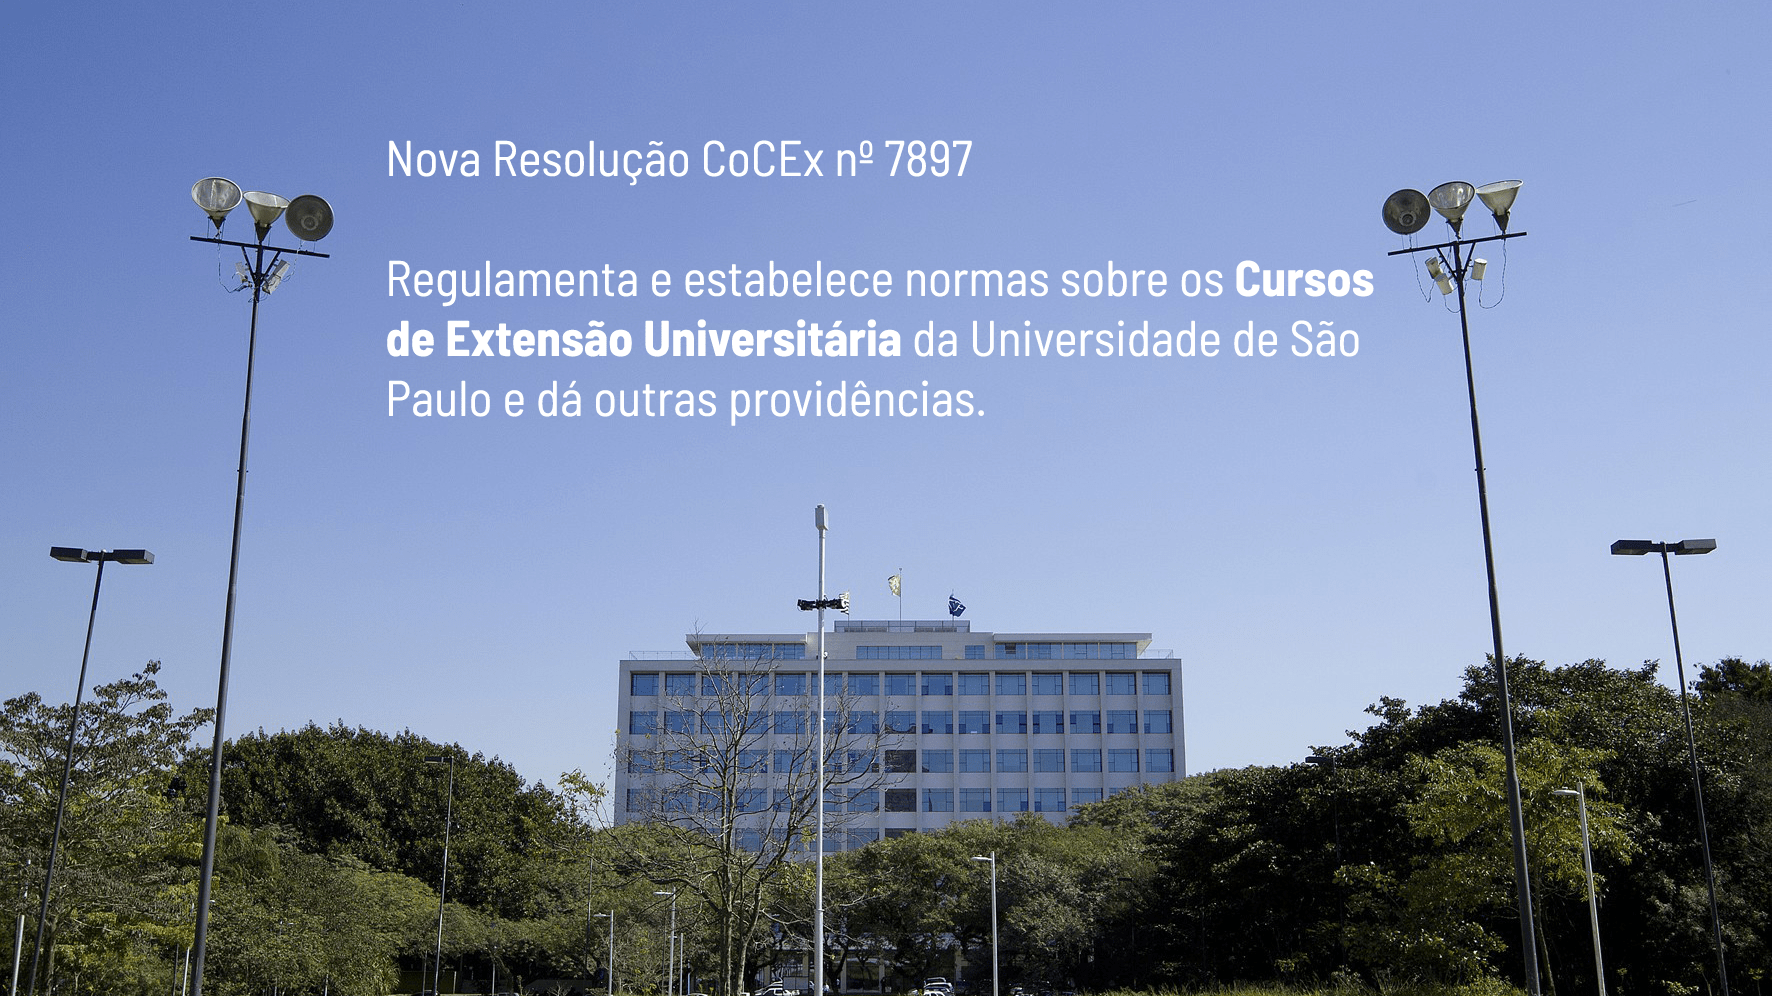 (Português) Nova Resolução CoCEx nº 7897 – Cursos de Extensão Universitária